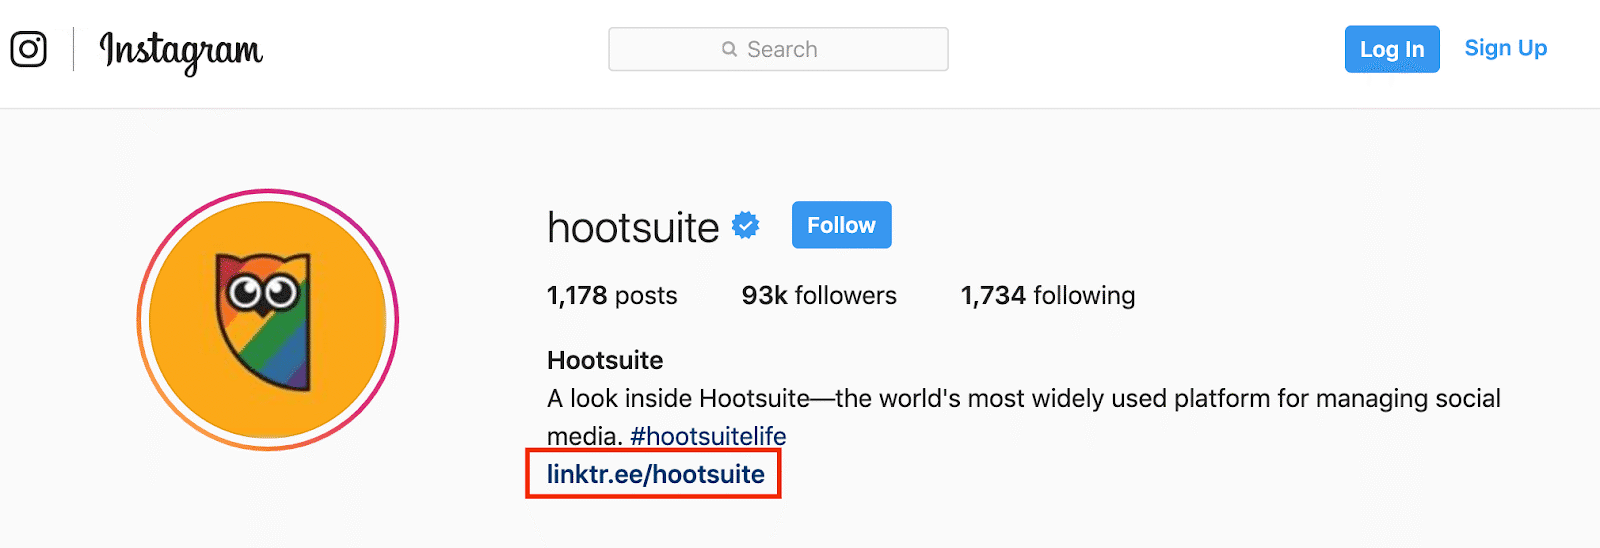 hootsuite instagram social selling